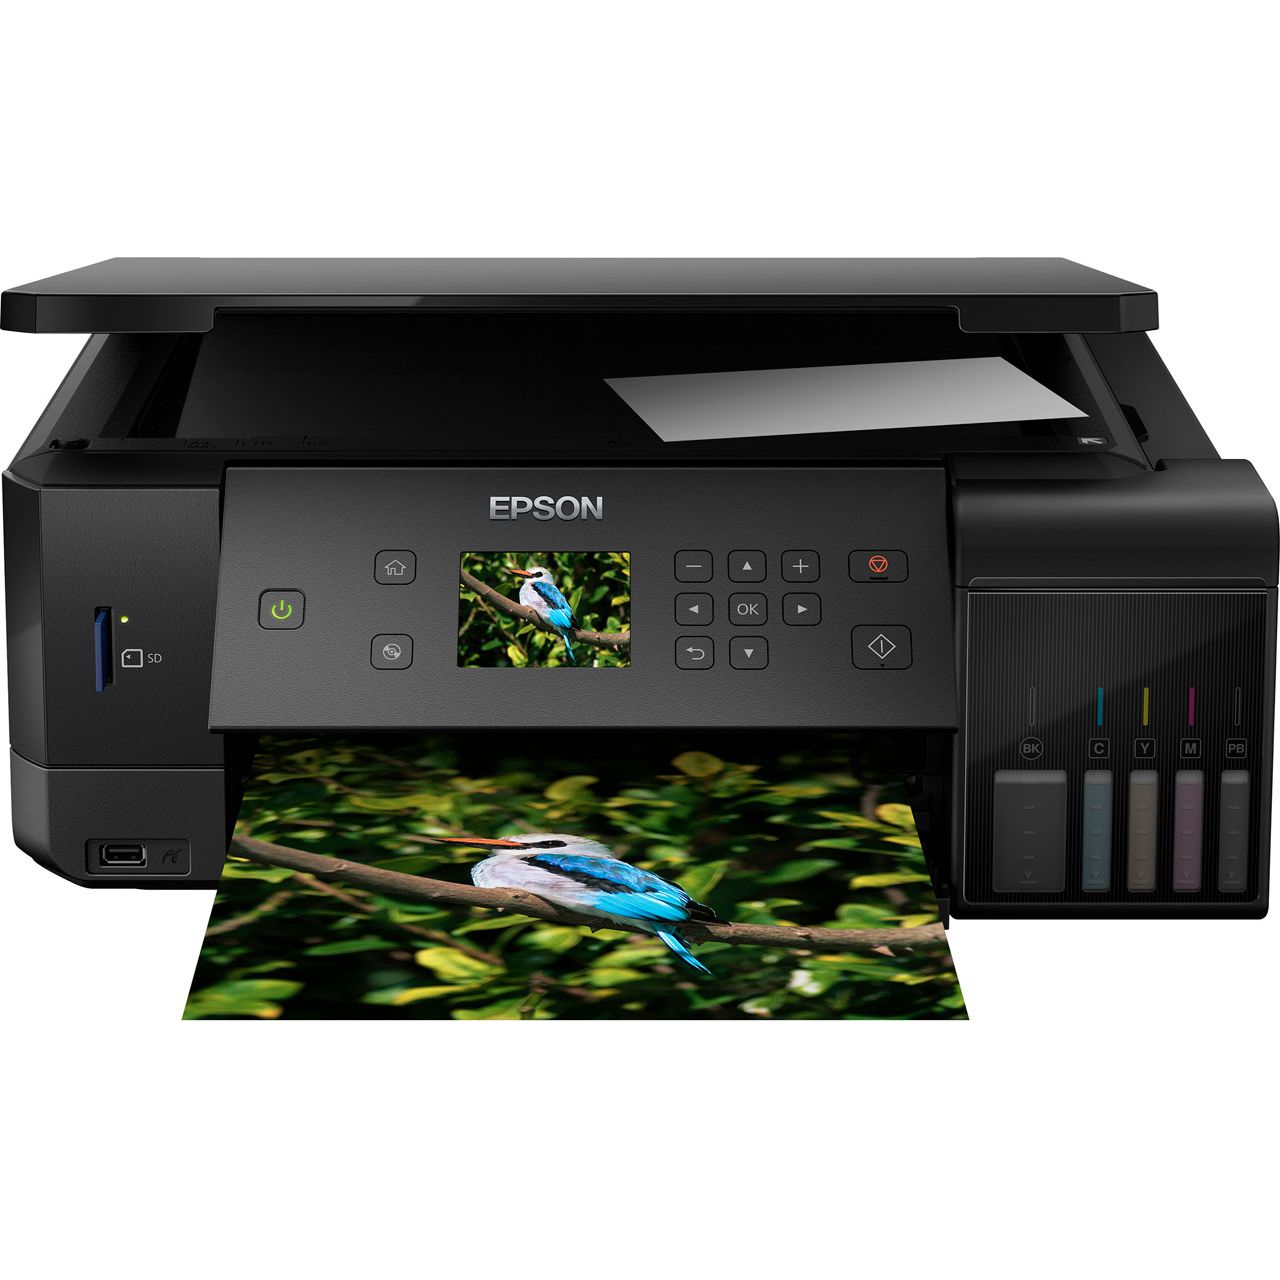  Epson  EcoTank  ET 7700 Printer Review